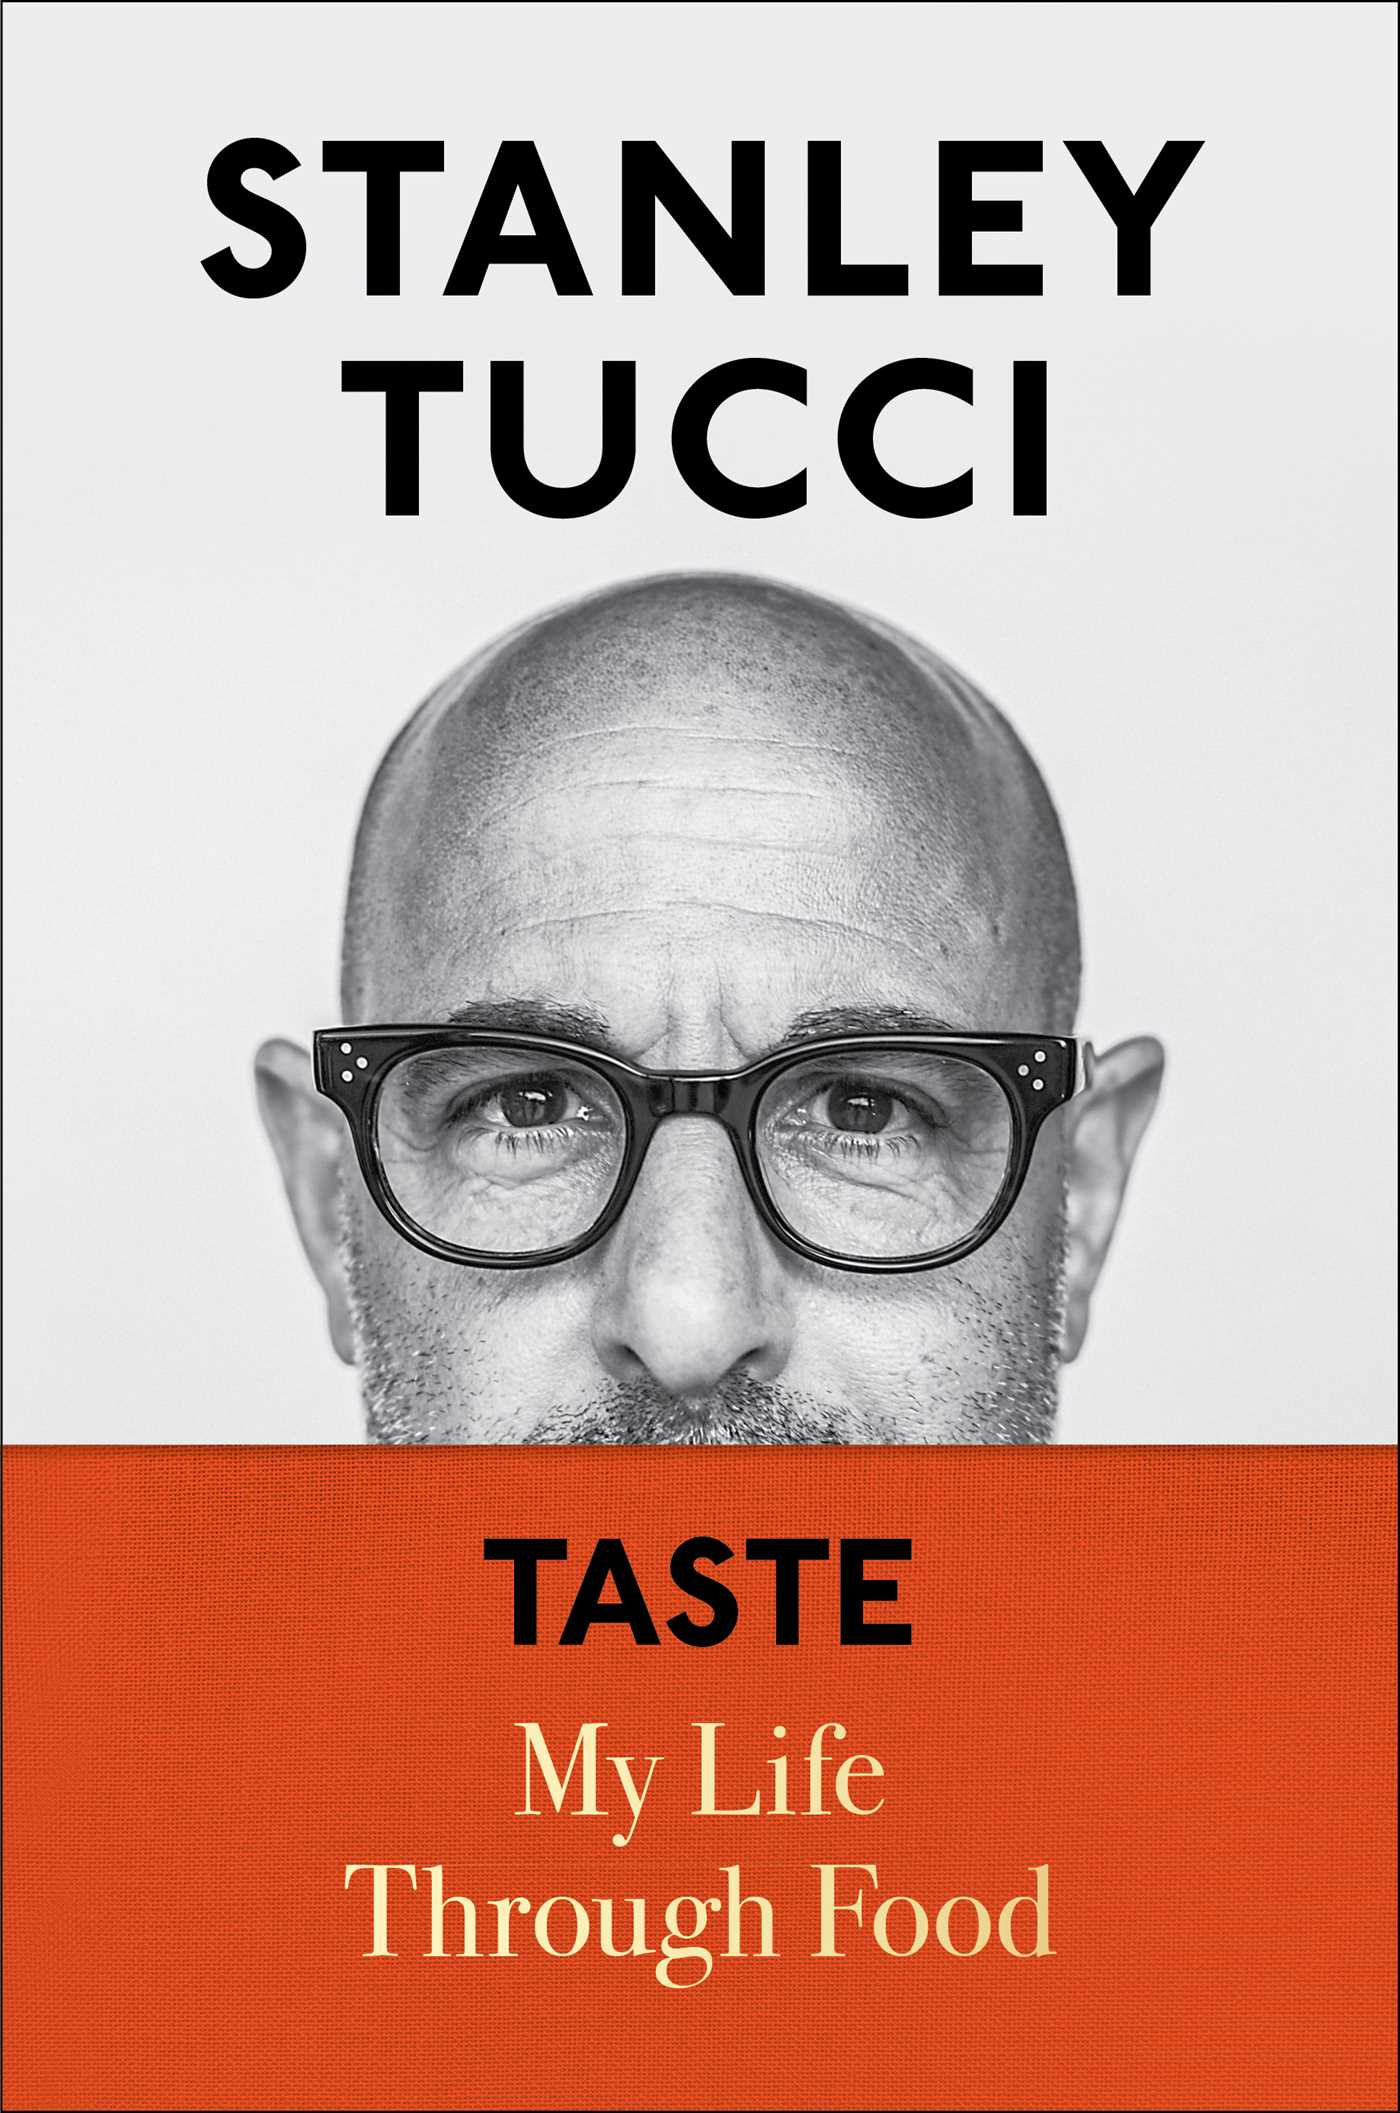 [EPUB] Taste: My Life Through Food by Stanley Tucci